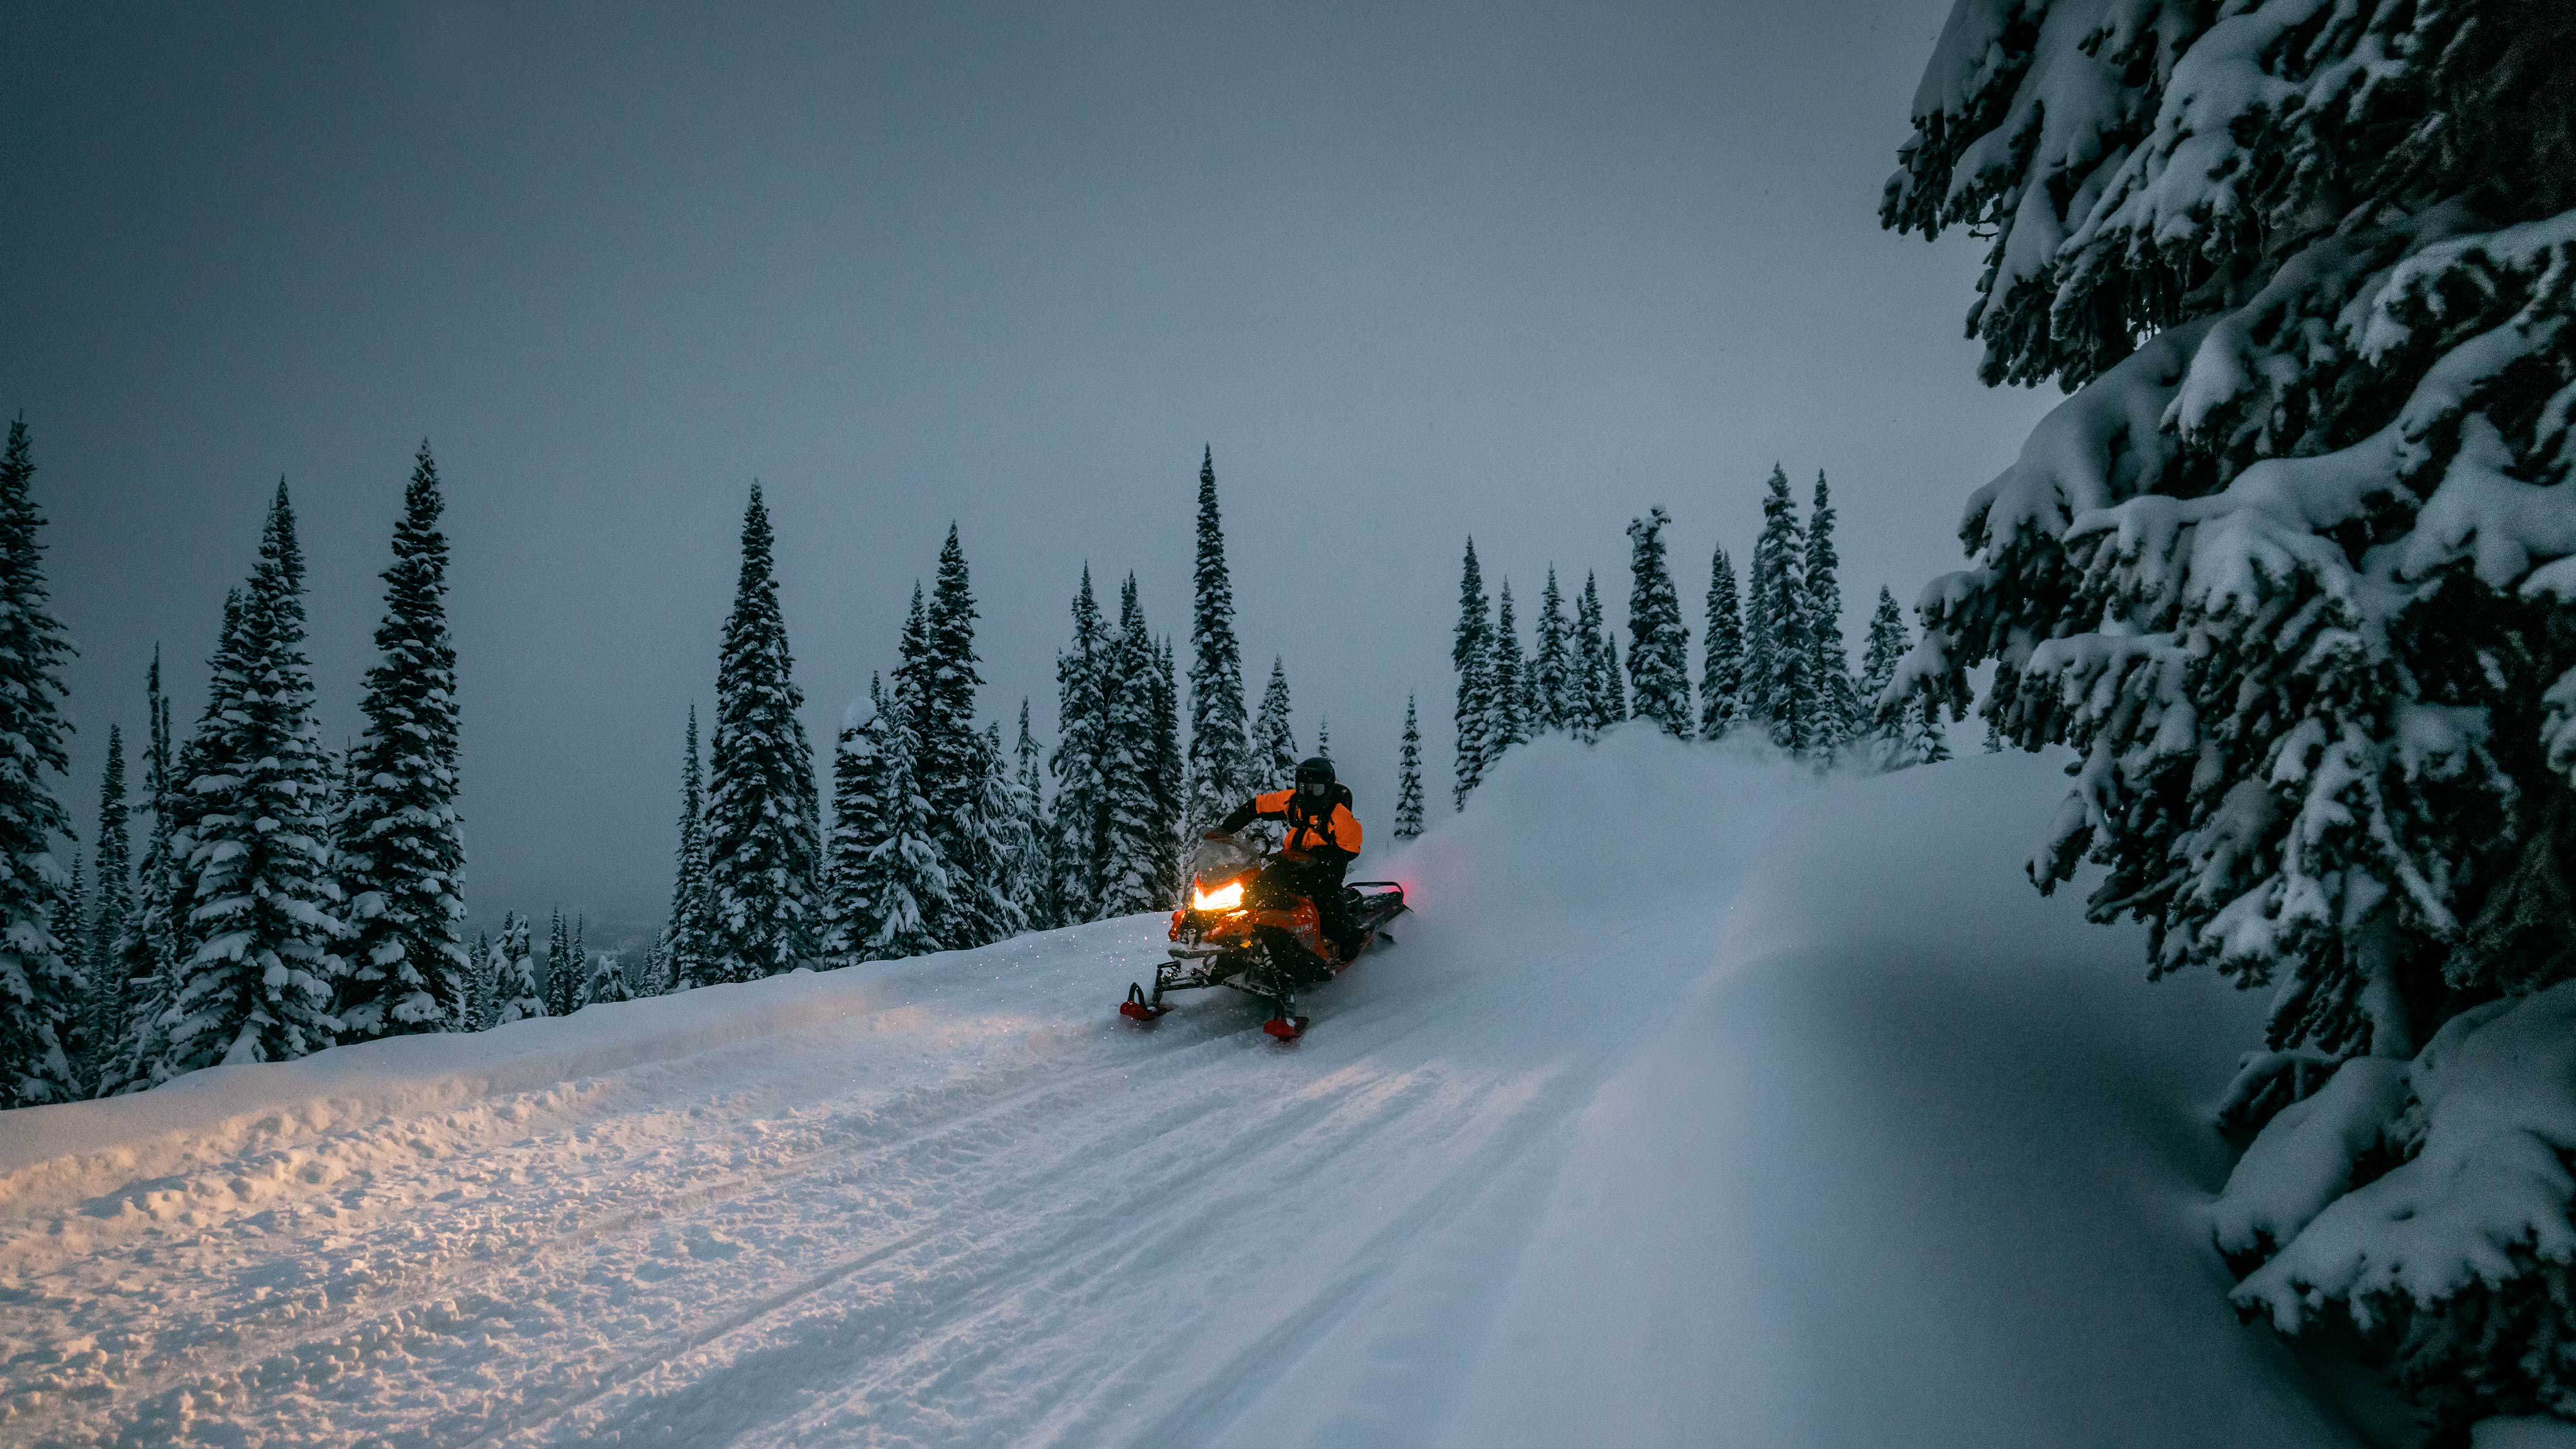 Rider enjoying a nightly drive on their Lynx snowmobile